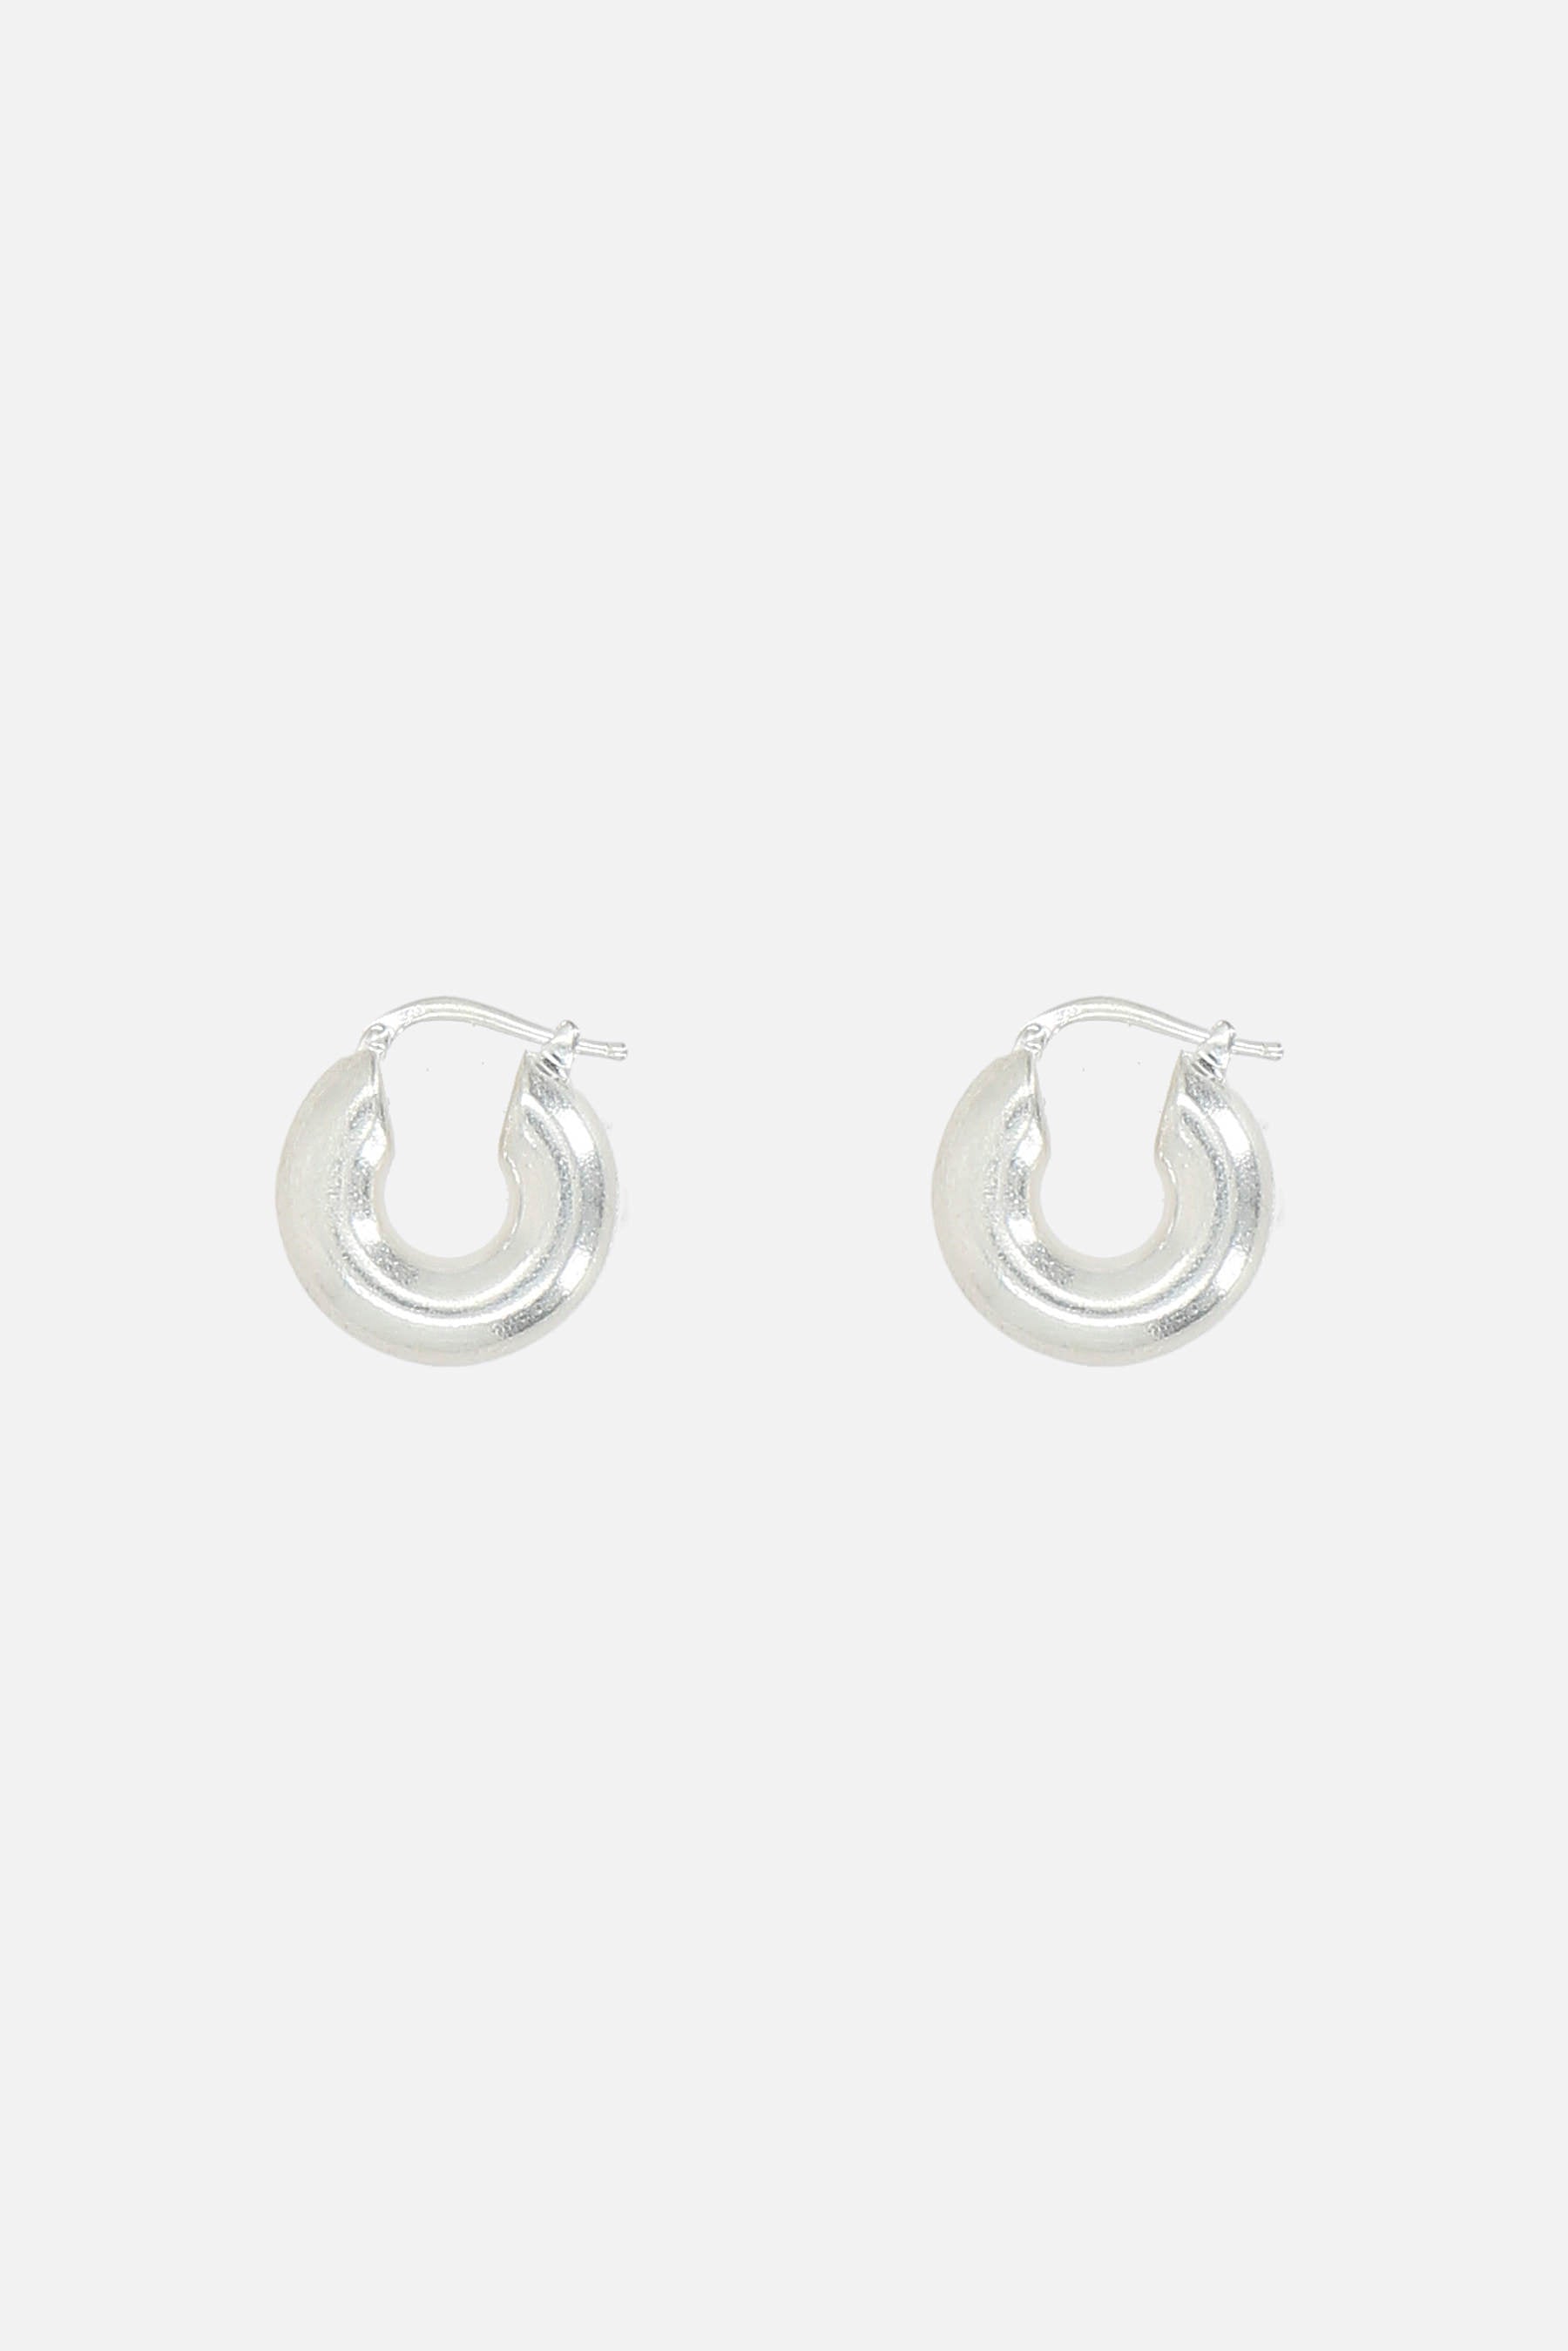 925 sterling silver hoop earrings